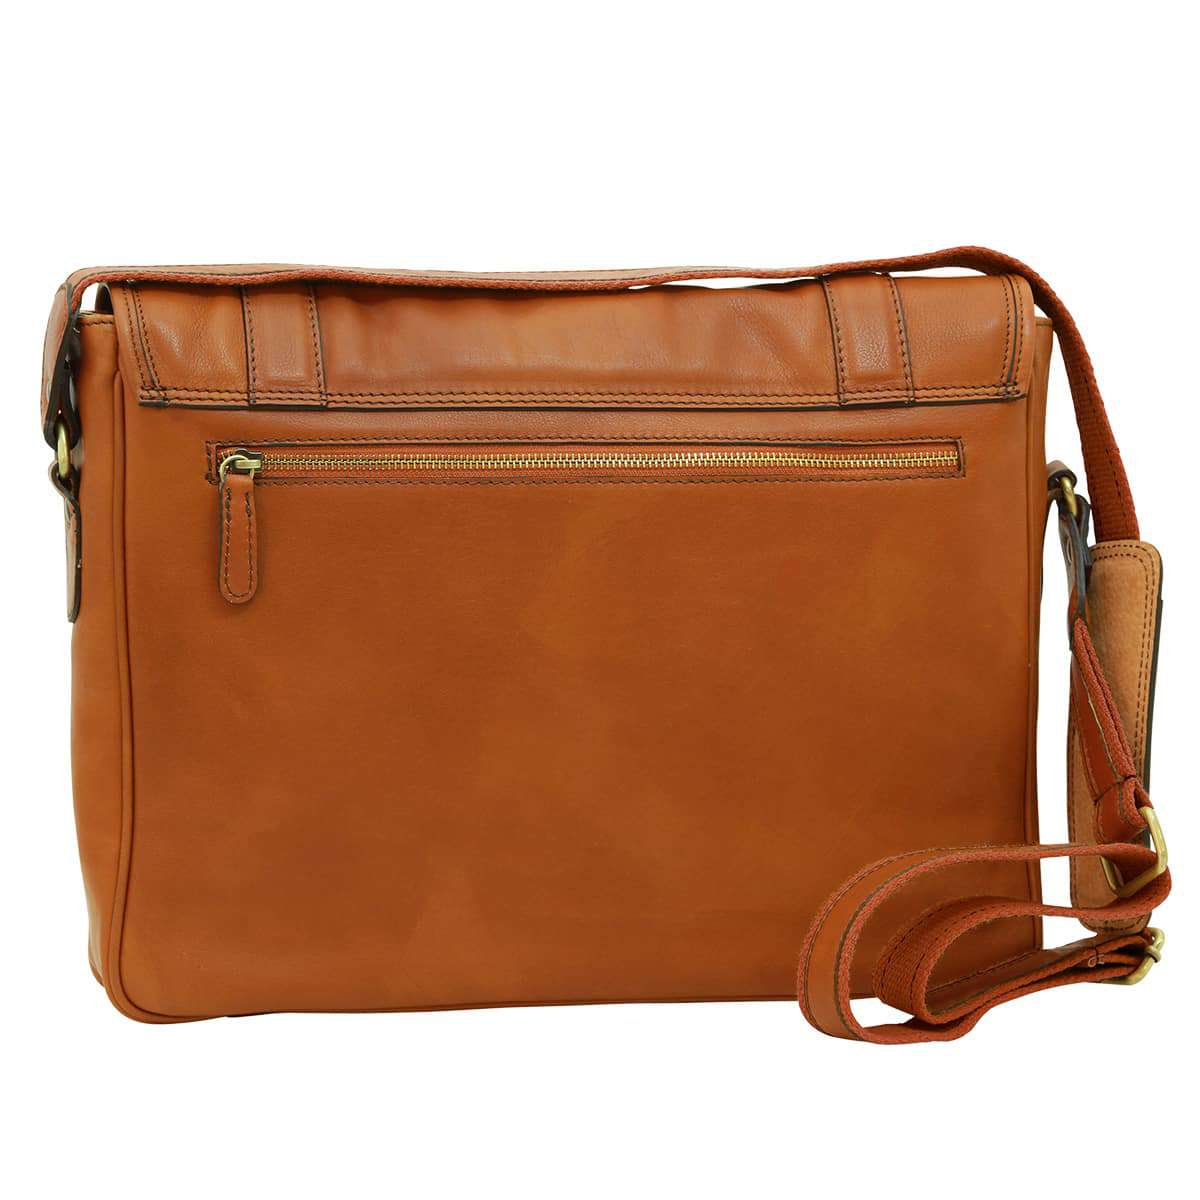 Soft Calfskin Leather Messenger Bag - Gold | 030491CO US | Old Angler Firenze